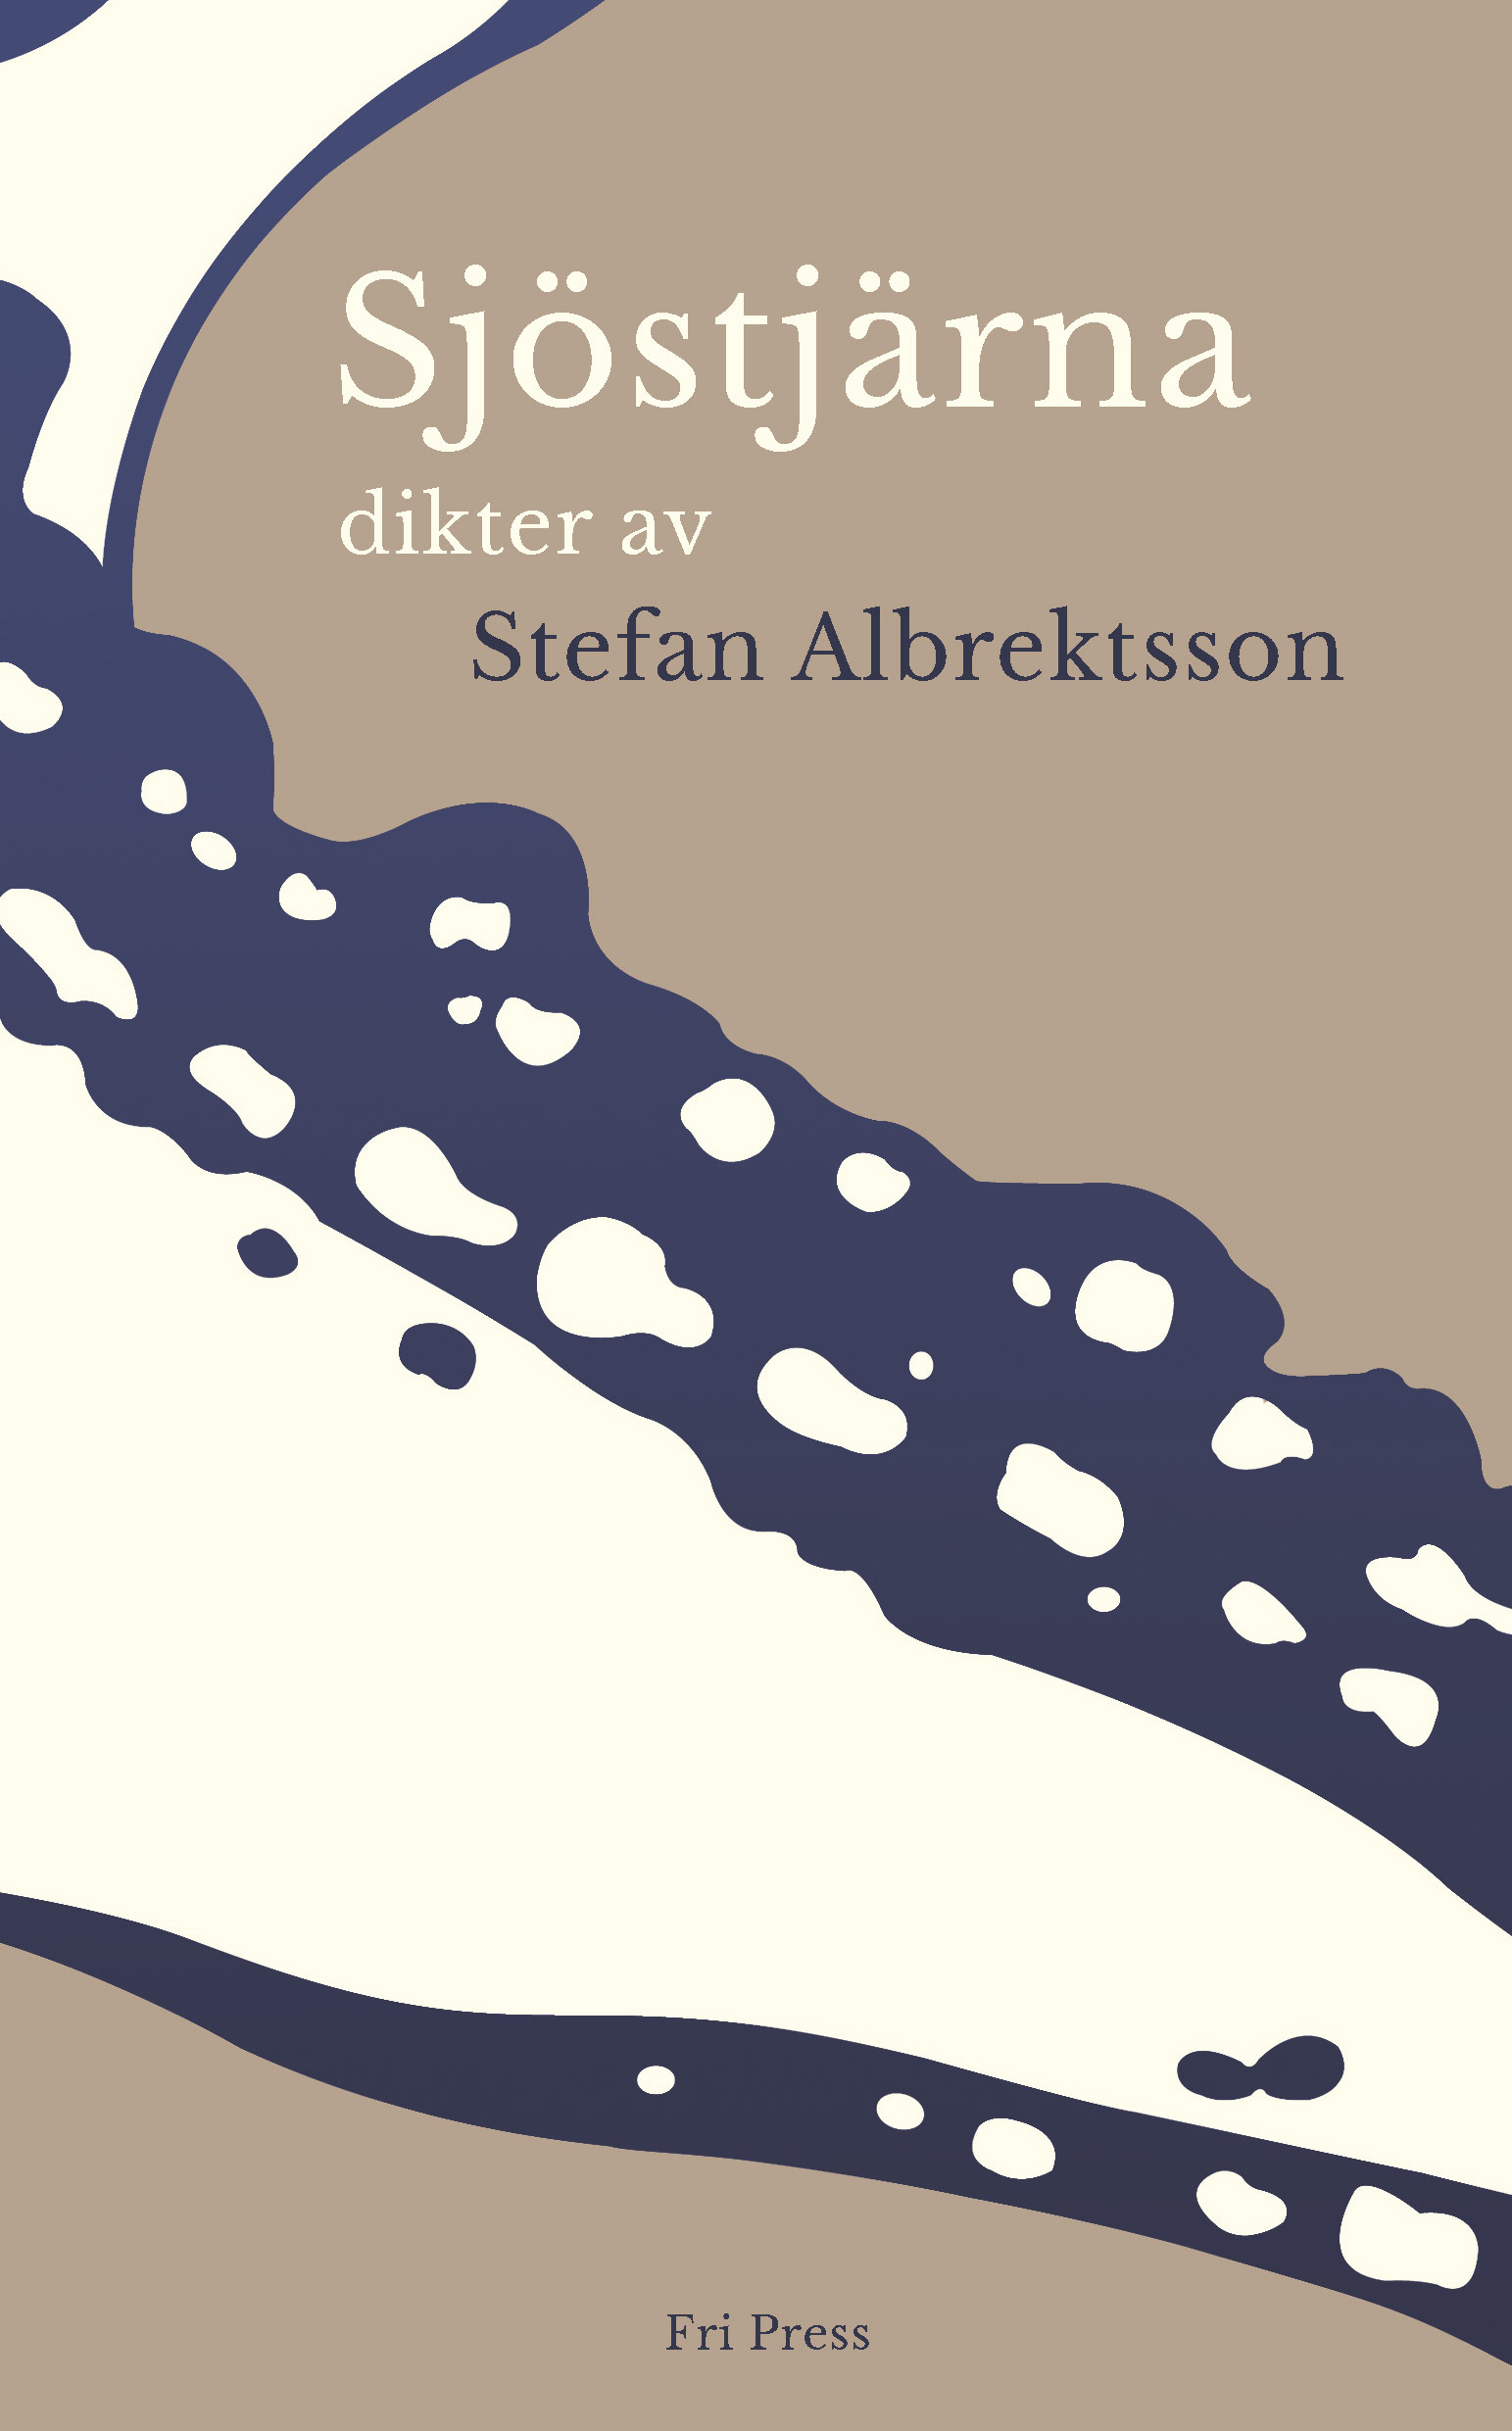 Bild: omslag till Stefan Albrektssons 'Sjöstjärna'. Det är ljusbrunt och blått och en anar en sjöstjärnearm.